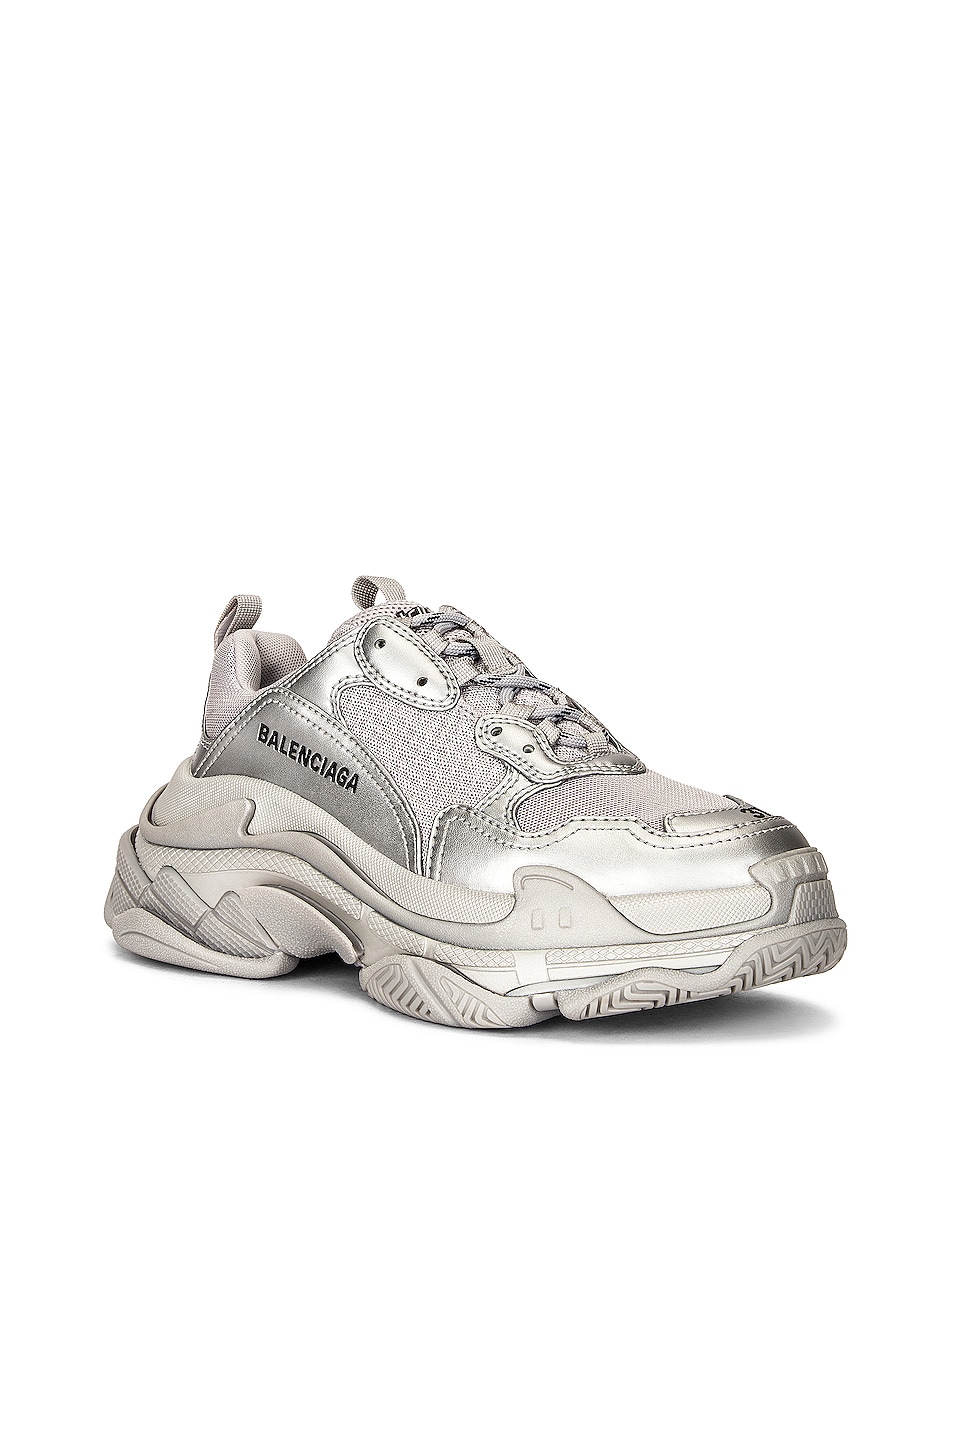 Balenciaga Triple S Sneakers in Silver Metallic | FWRD